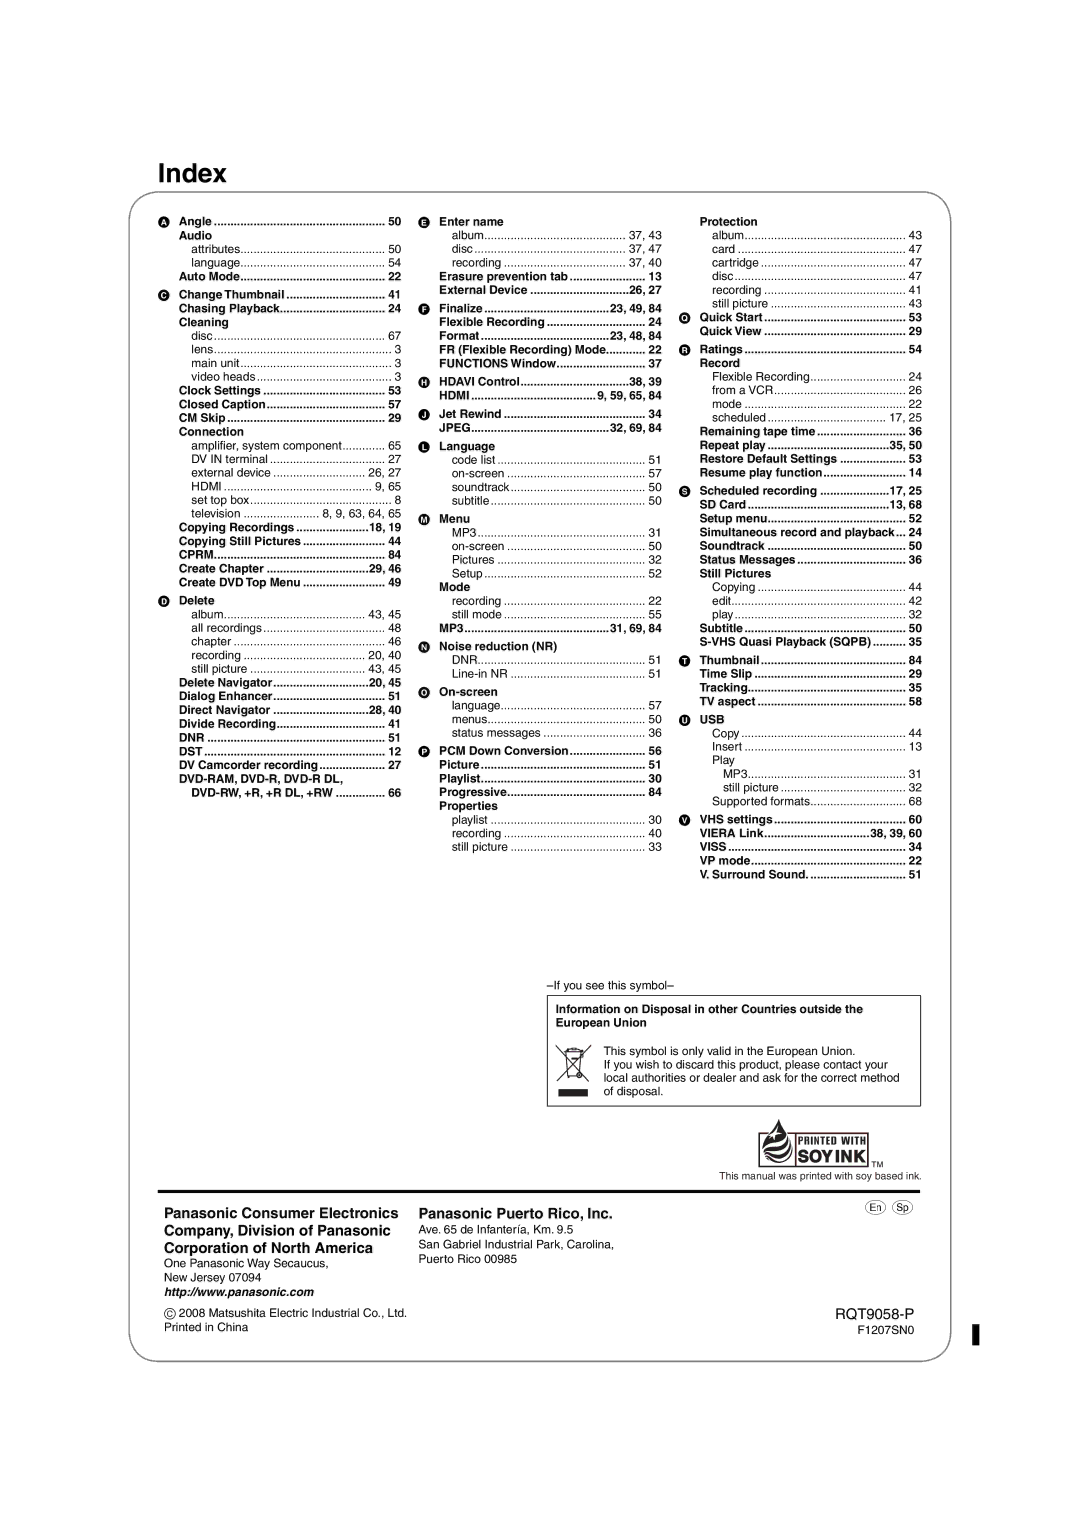 Panasonic DMR-EA38V warranty Index, Panasonic Puerto Rico, Inc 